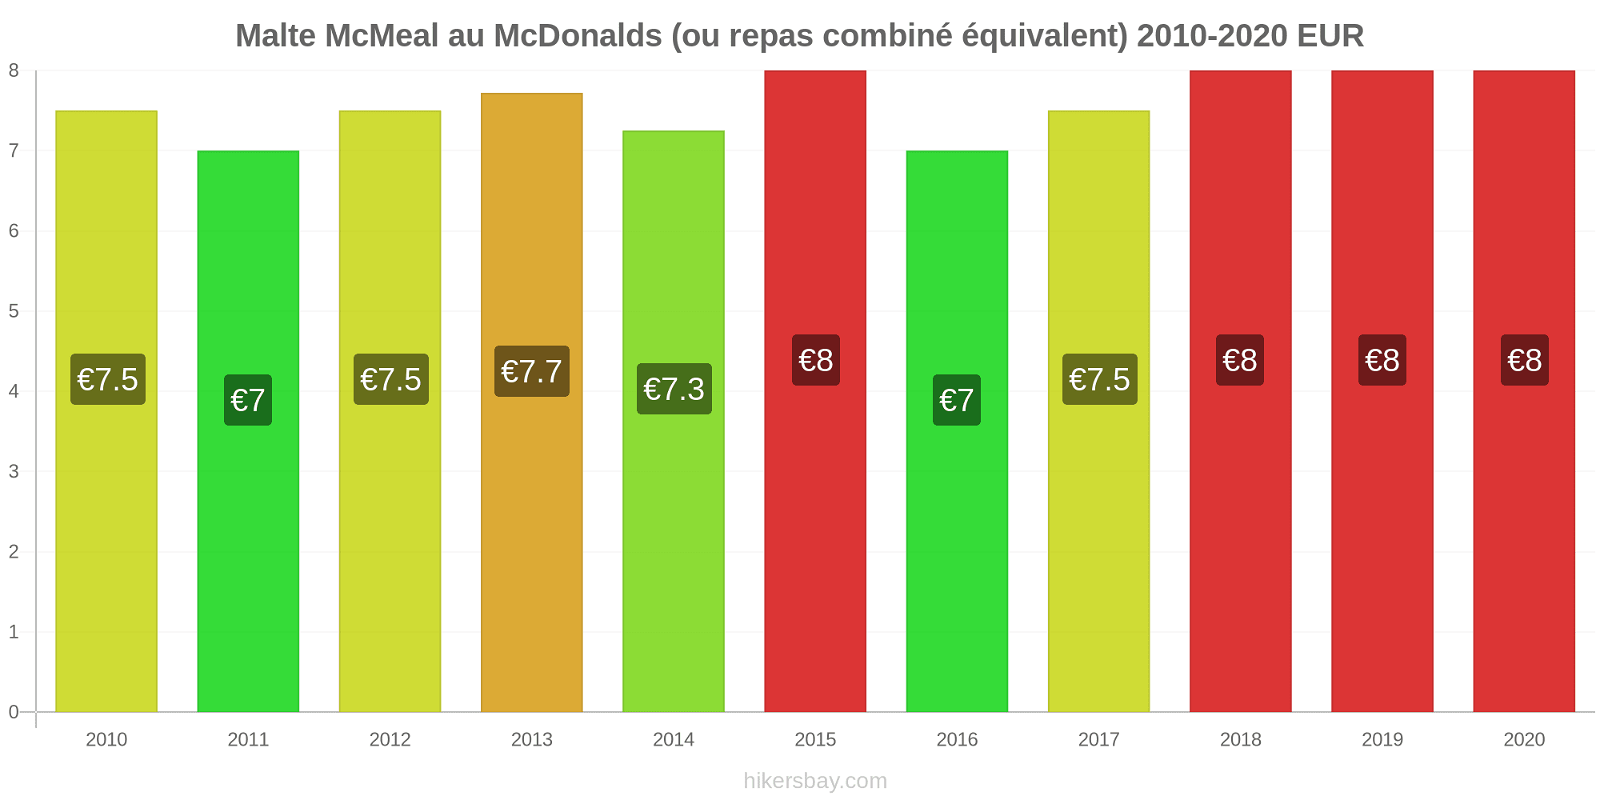 Malte changements de prix McMeal à McDonald ' s (ou Combo équivalent tourteau) hikersbay.com